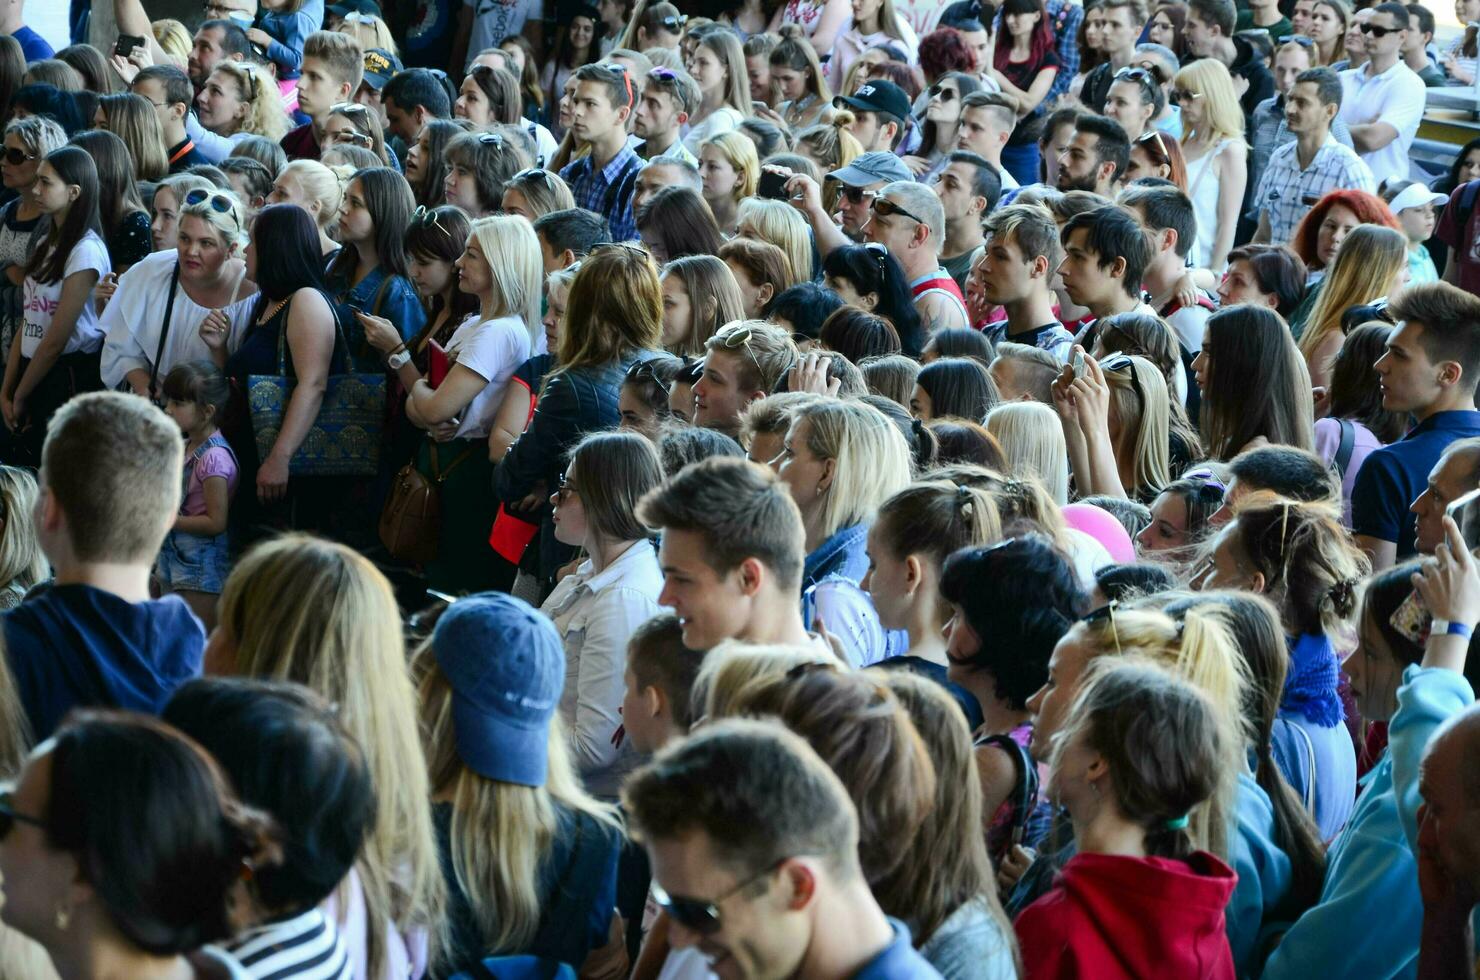 kharkiv, ukraina - 27 Maj, 2018 folkmassan av människor som en åskådare under de årlig festival av gata kulturer foto